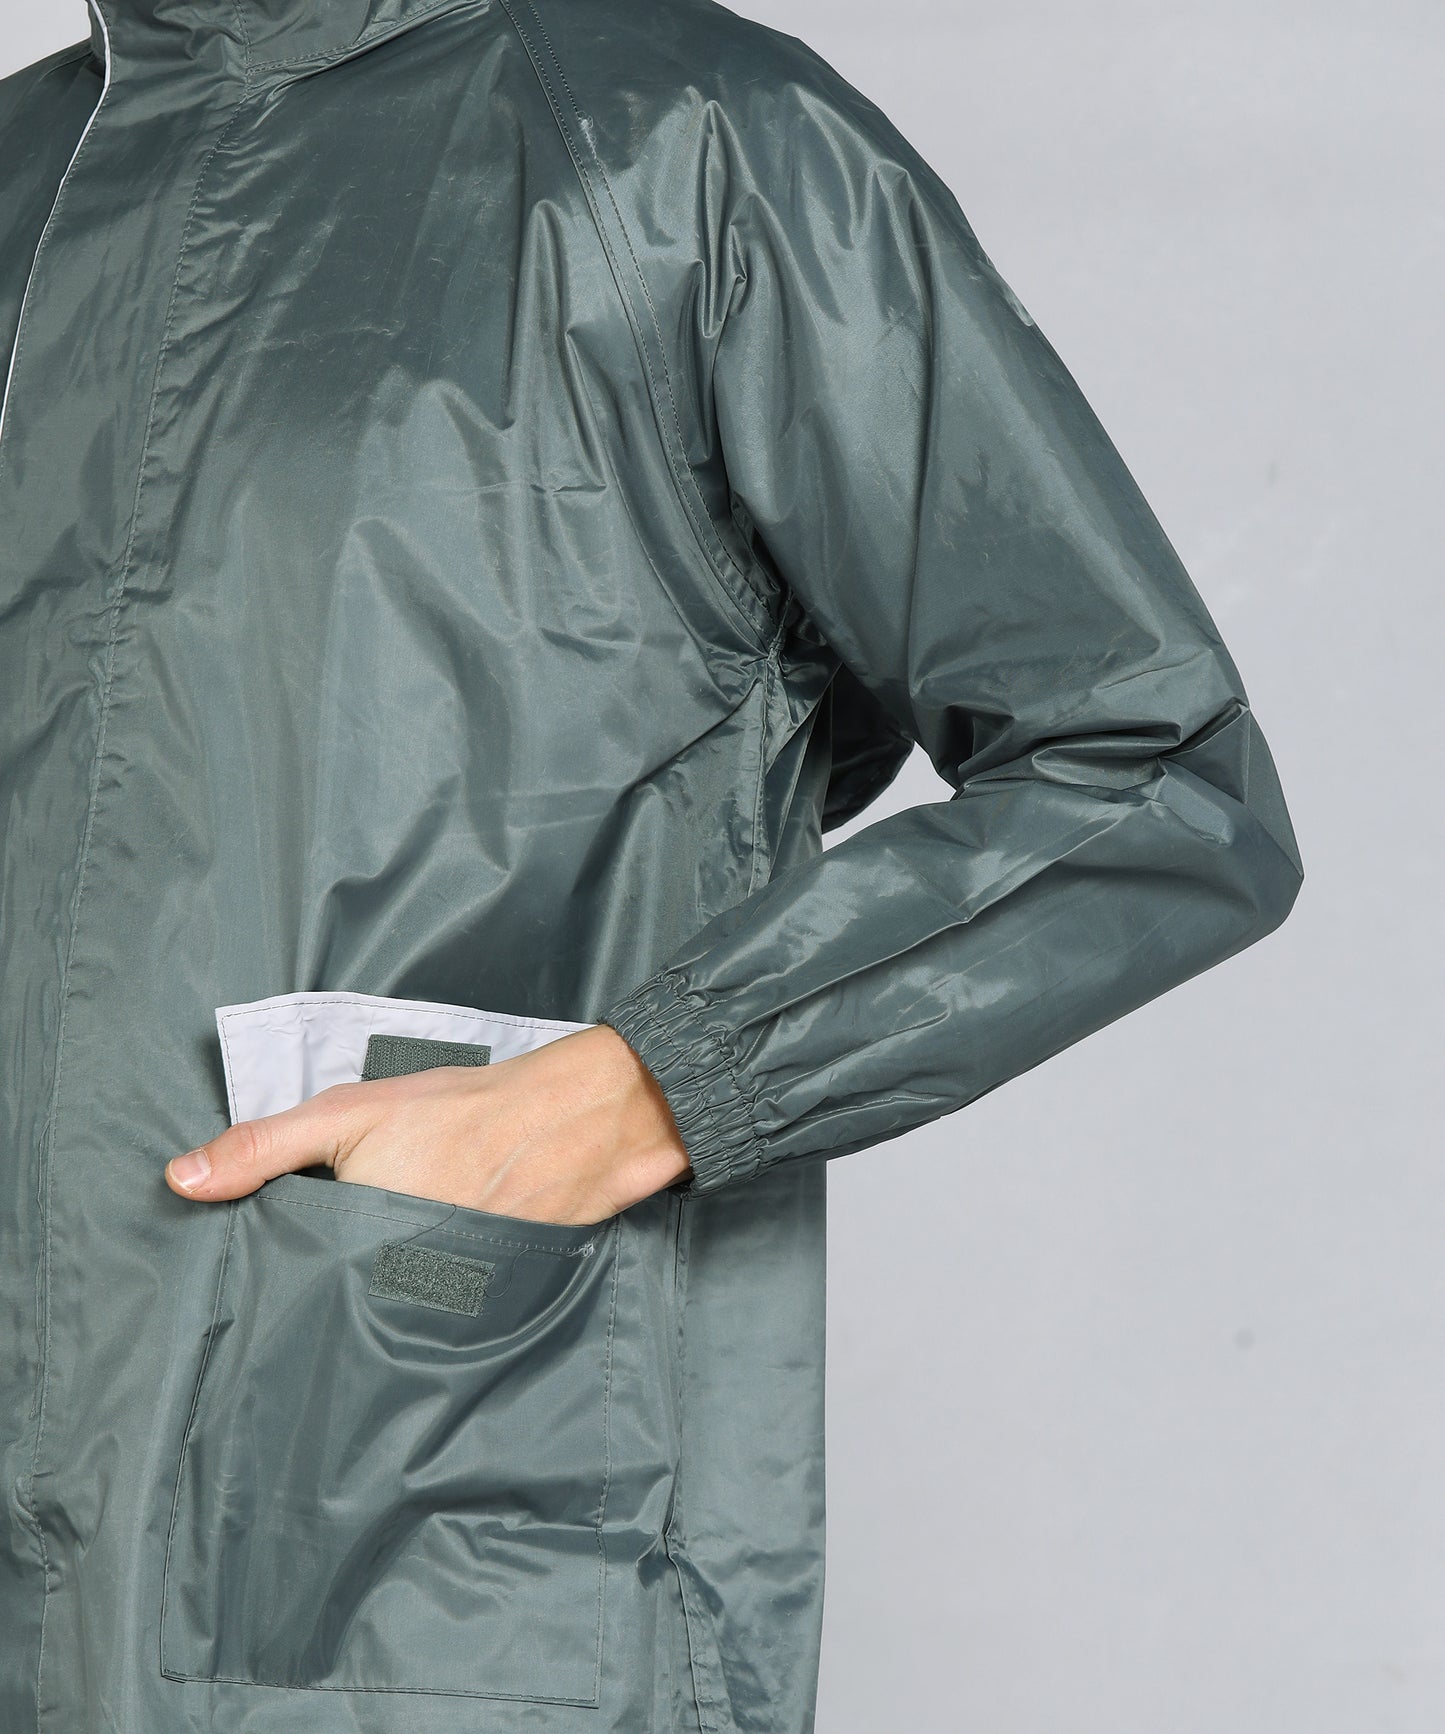 DURACOAT | Men's Waterproof Long Coat - Grey